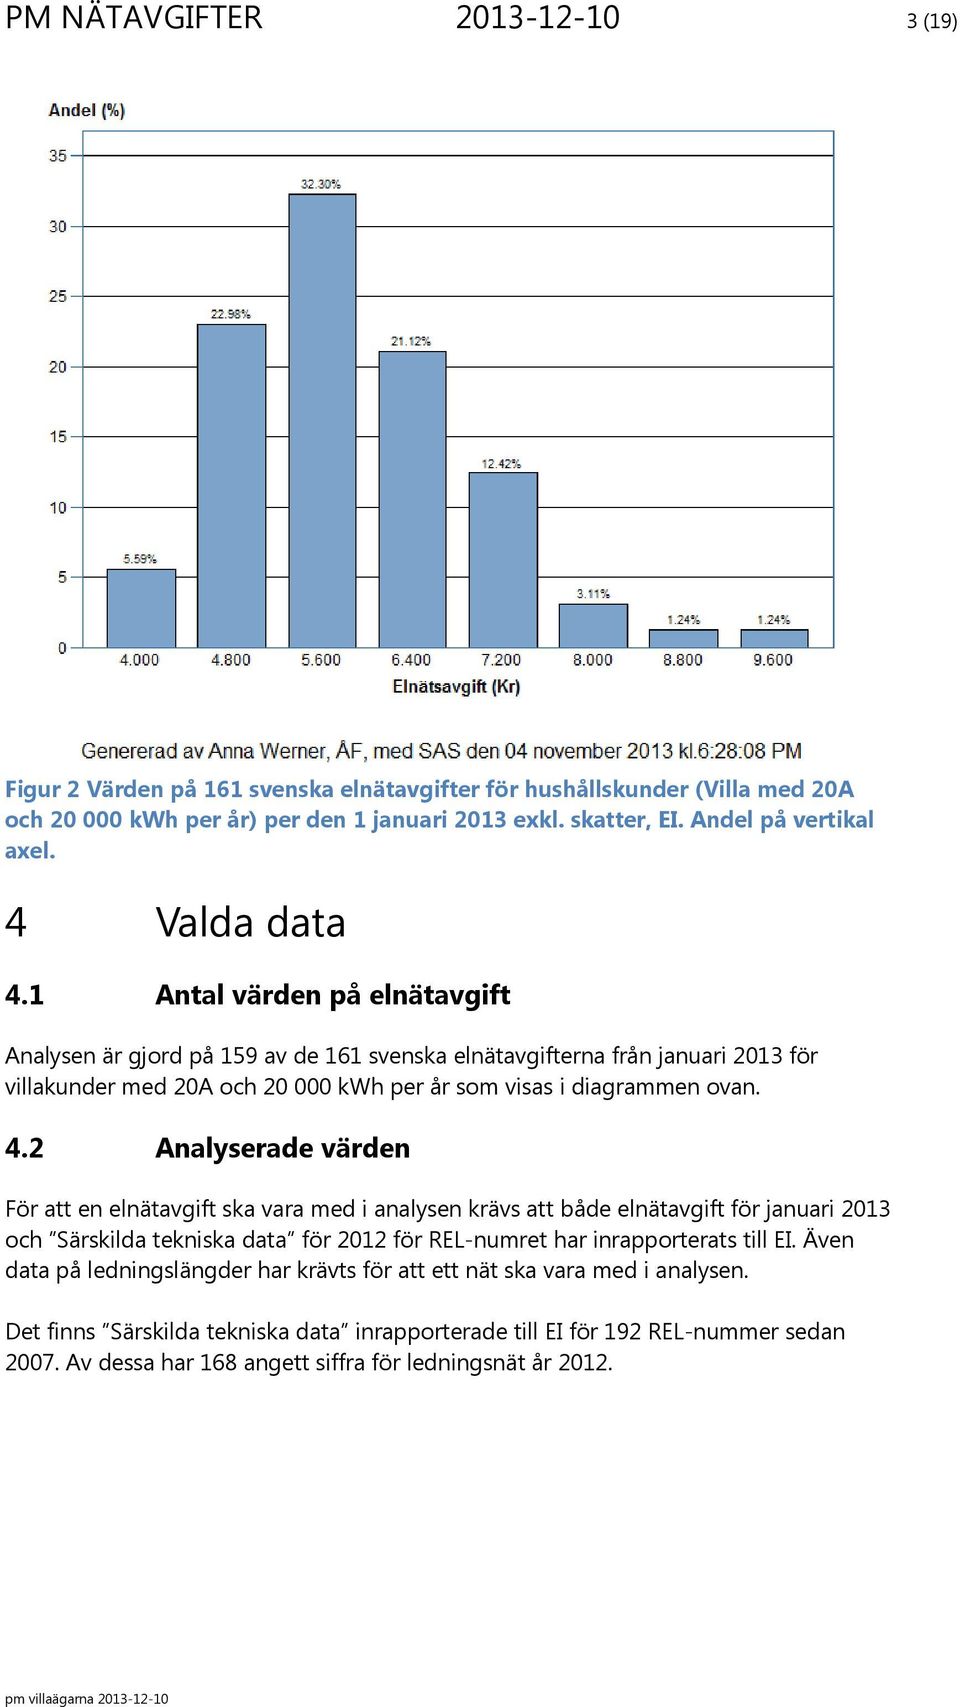 1 Antal värden på elnätavgift Analysen är gjord på 159 av de 161 svenska elnätavgifterna från januari 2013 för villakunder med 20A och 20 000 kwh per år som visas i diagrammen ovan. 4.